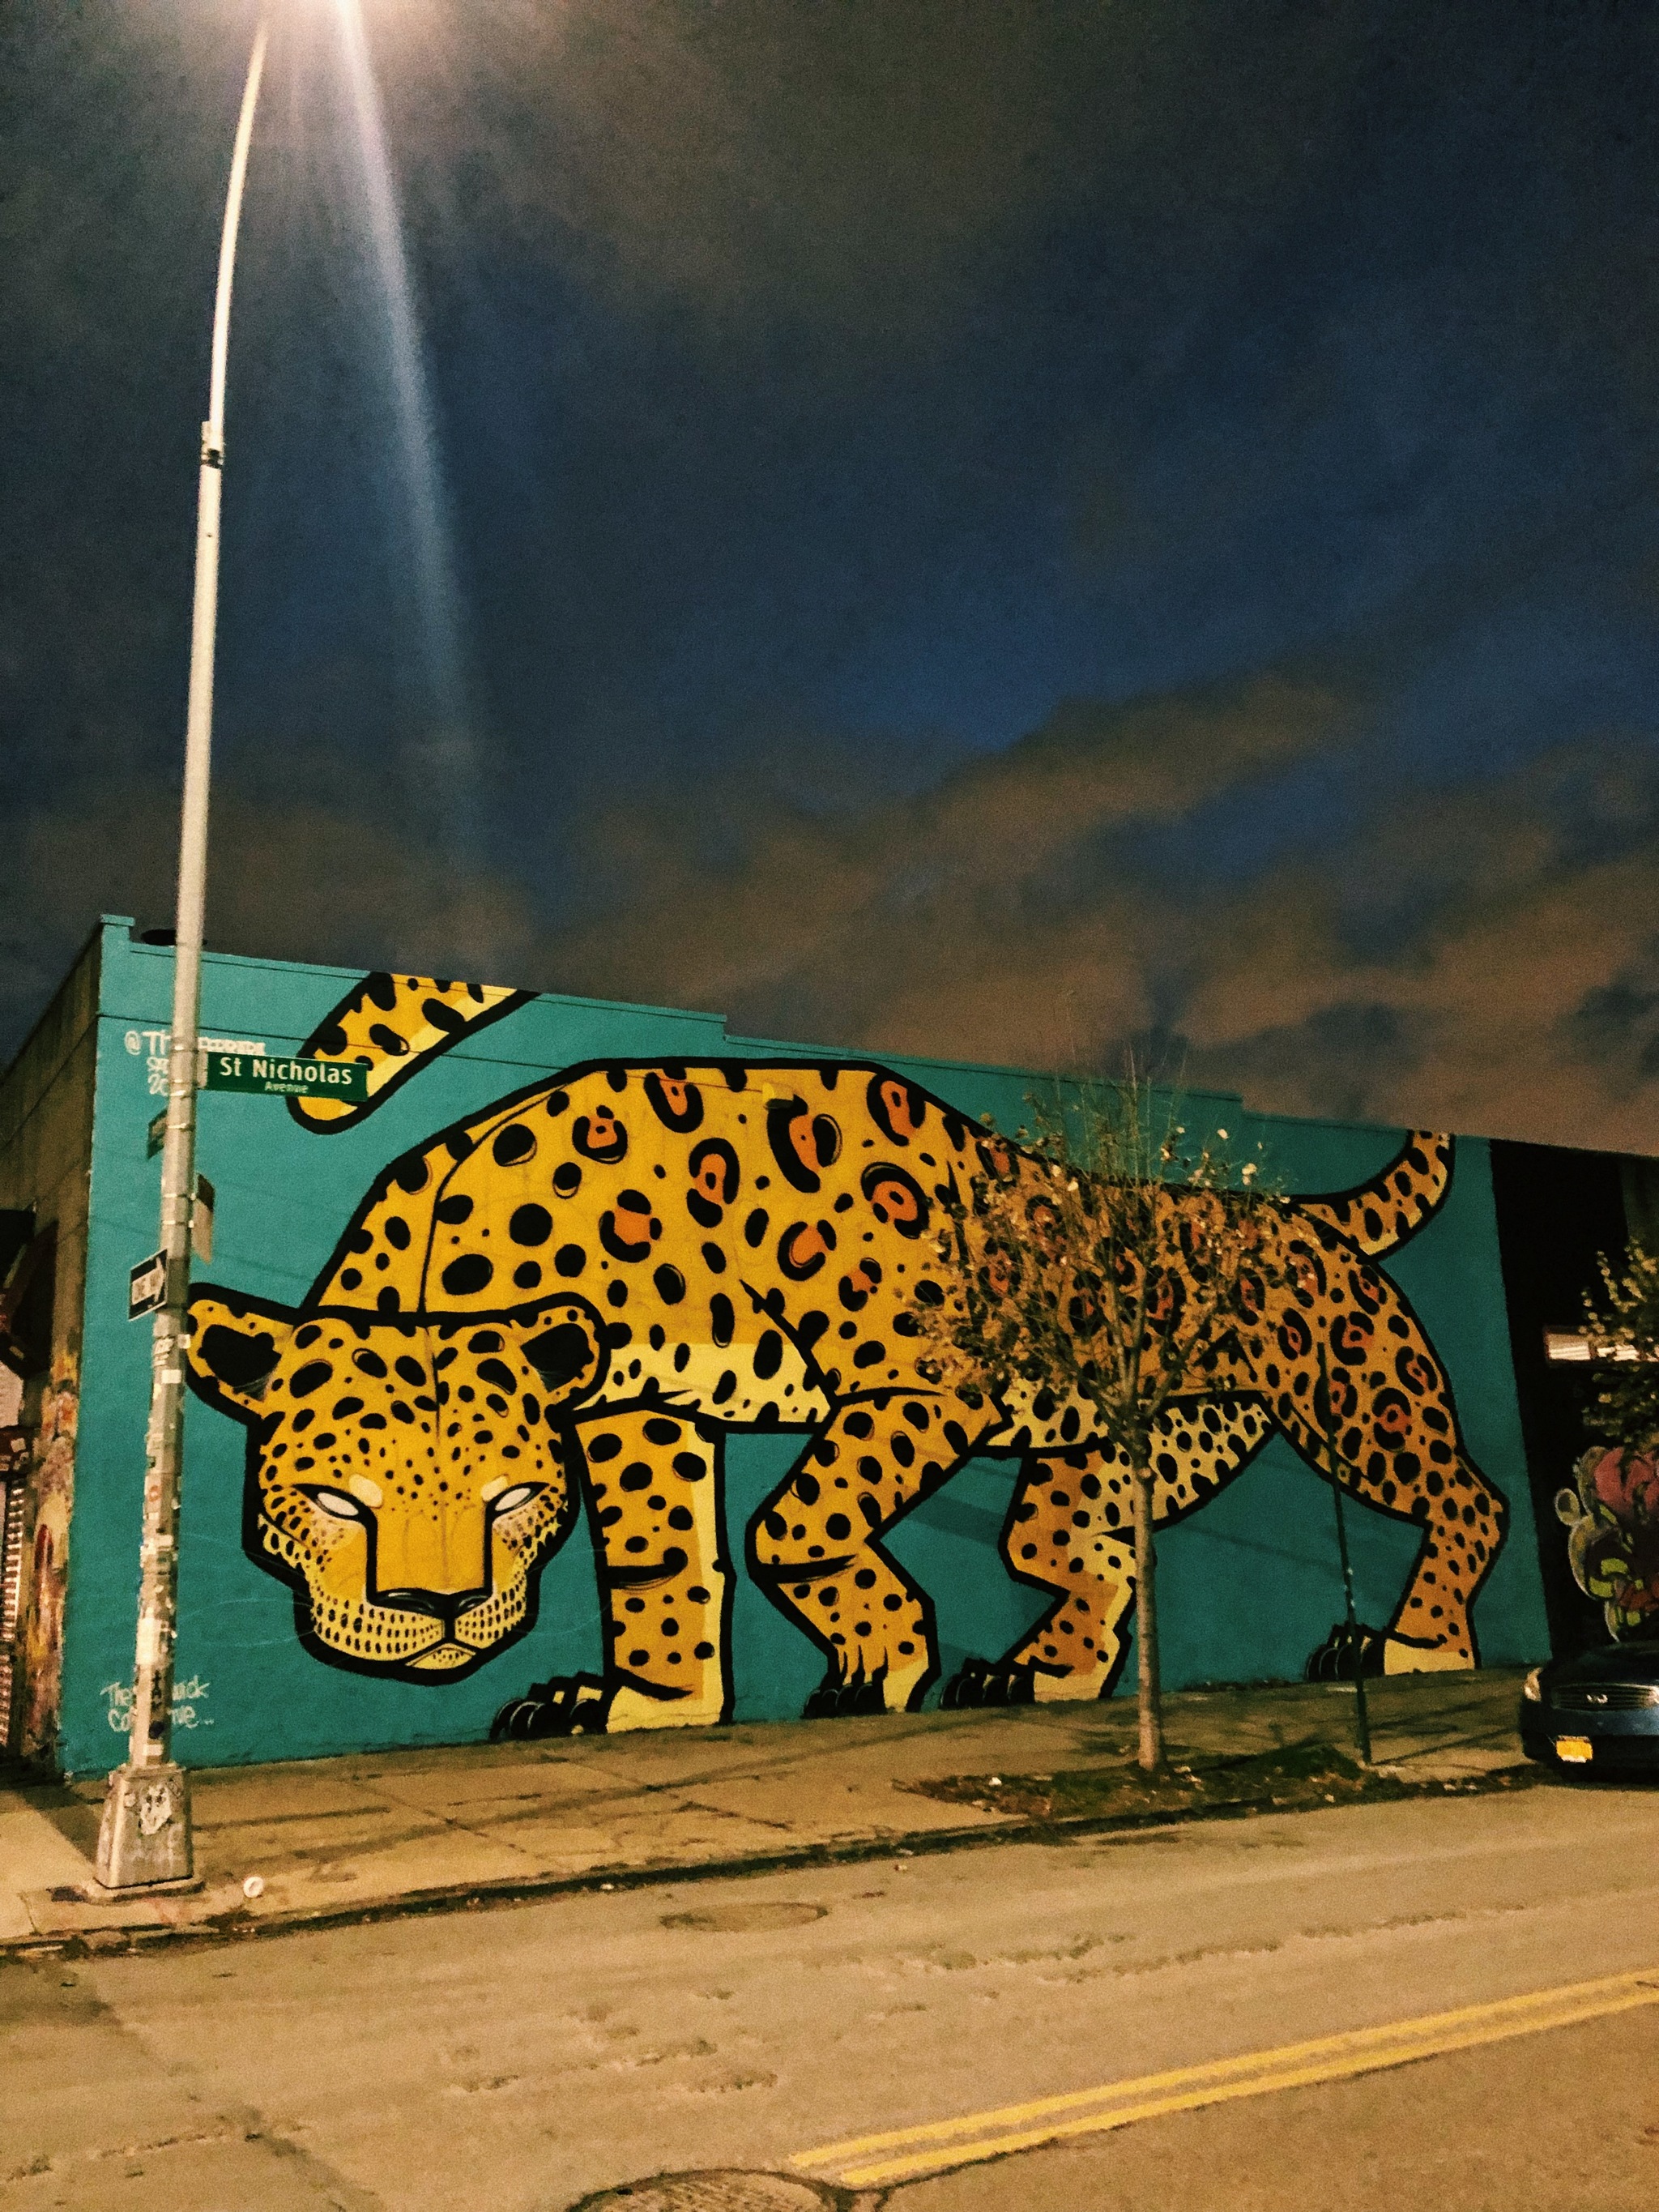 Piérdete por las calles de Brooklyn y disfruta de un museo al aire libre con sus grafitis.